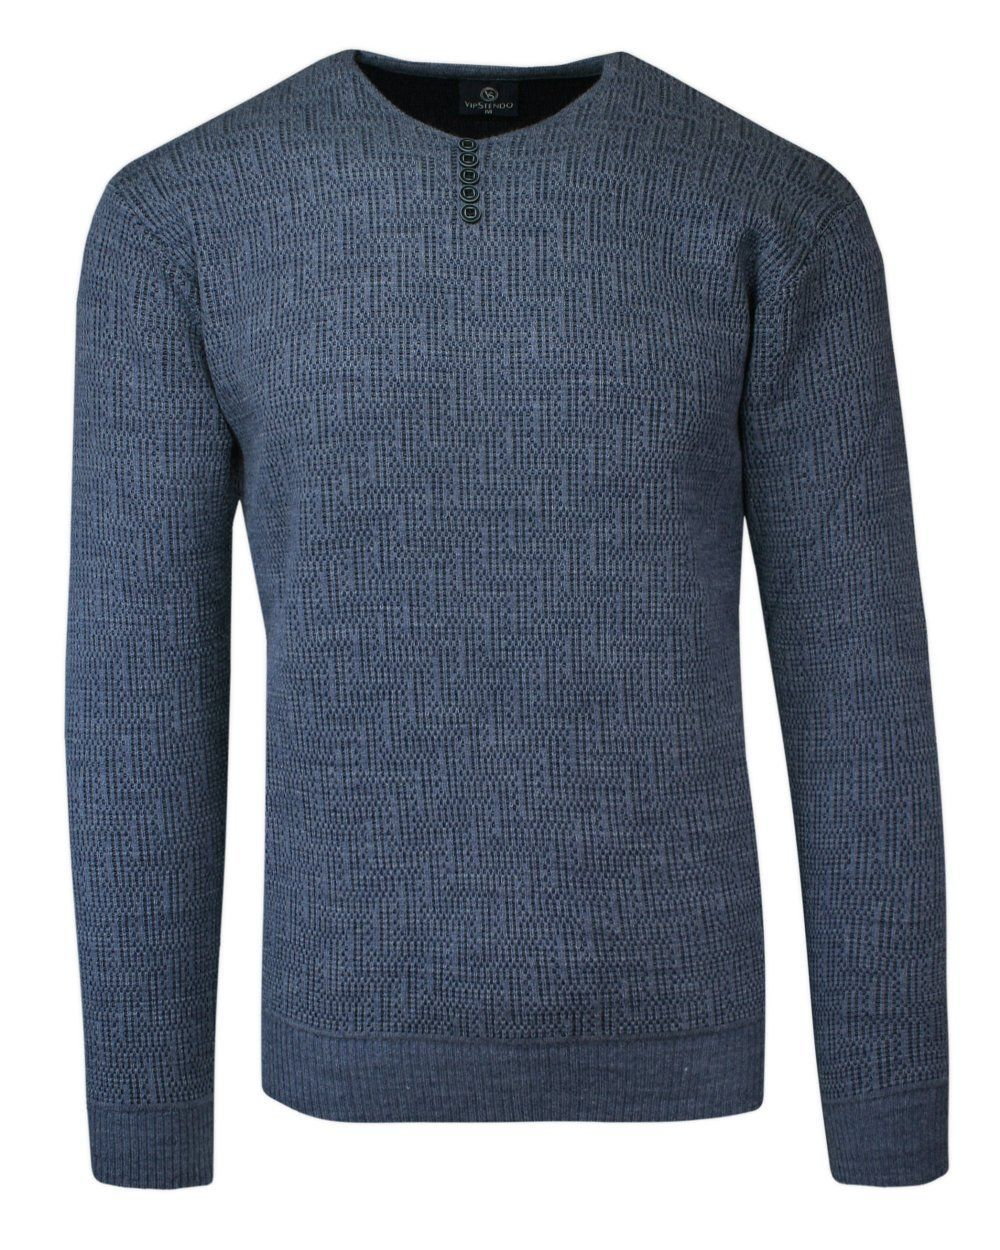 Sweter Wełniany Niebieski w Serek, z Guzikami, w Tłoczony Wzór, V-neck, Męski -VIP STENDO - Vip Stendo